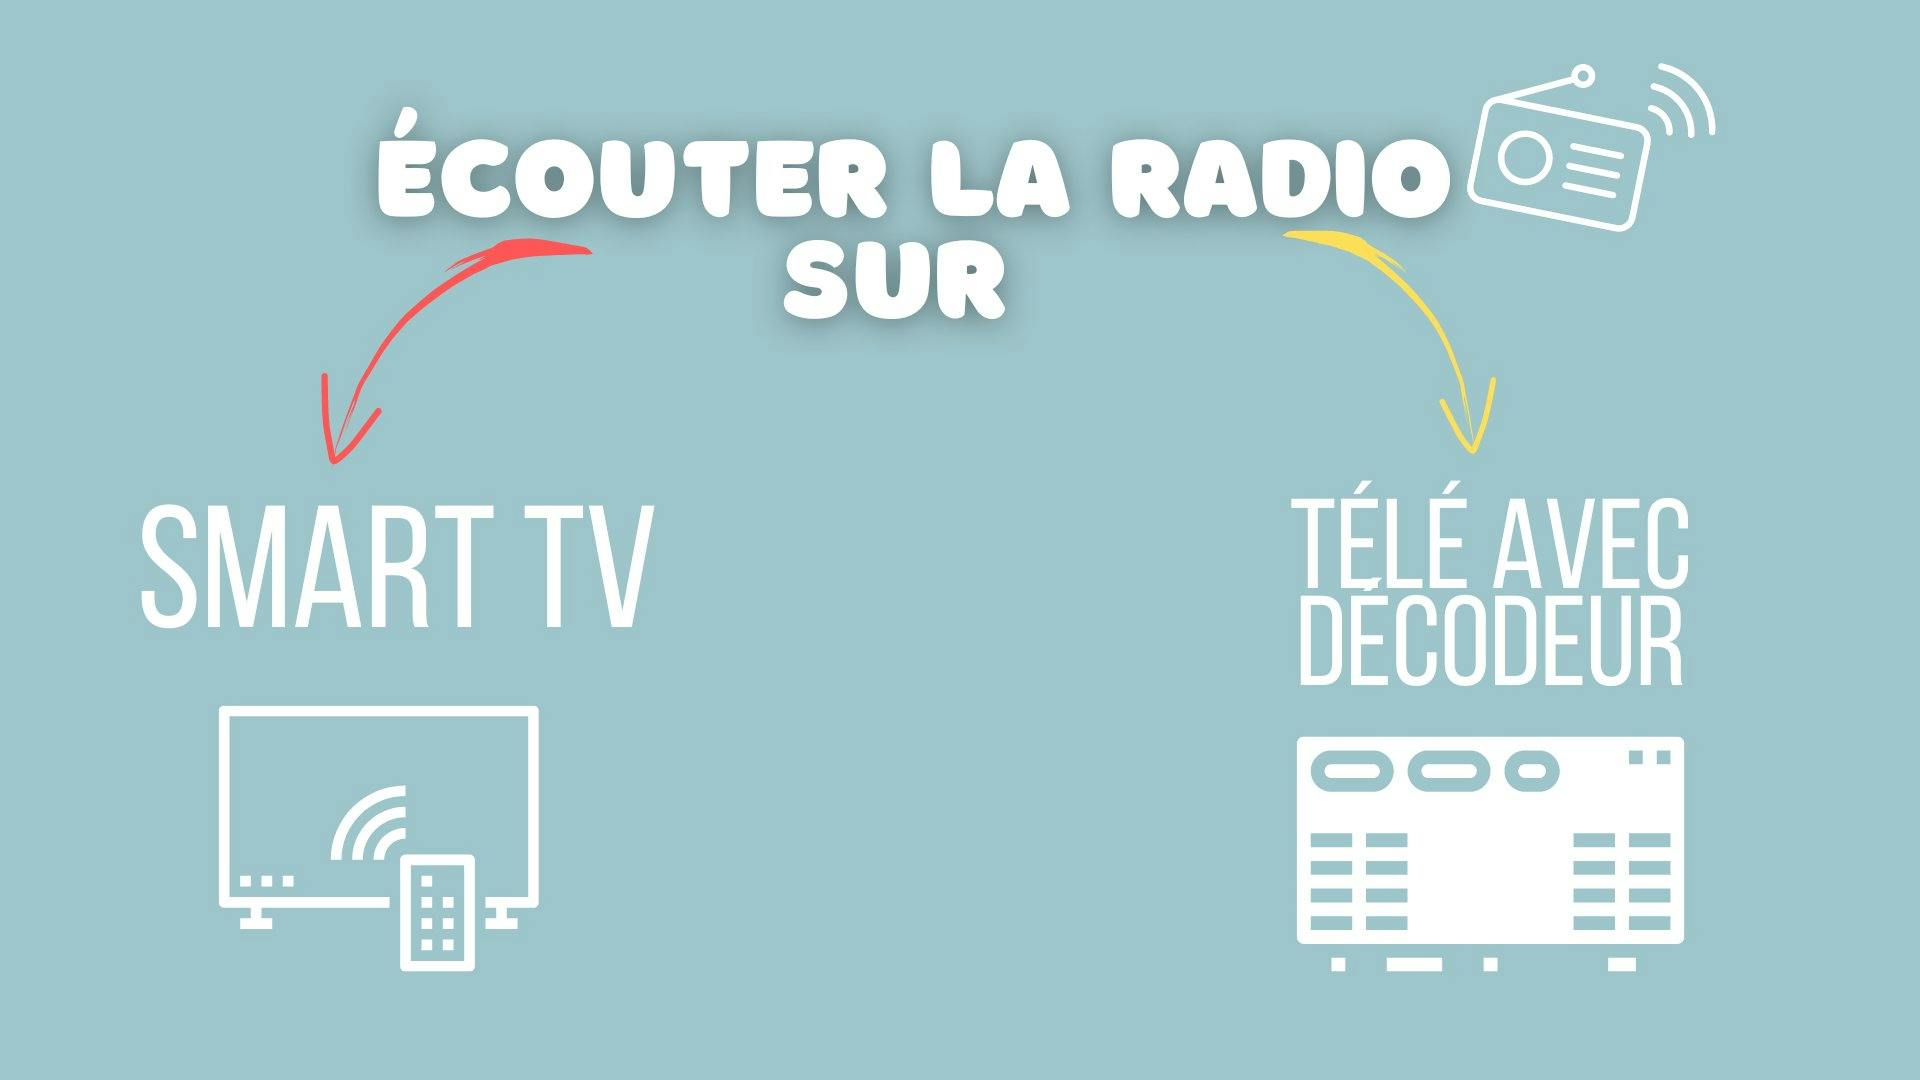 Illustration montrant les choix pour écouter la radio sur une smart tv ou sur une télé avec un décodeur